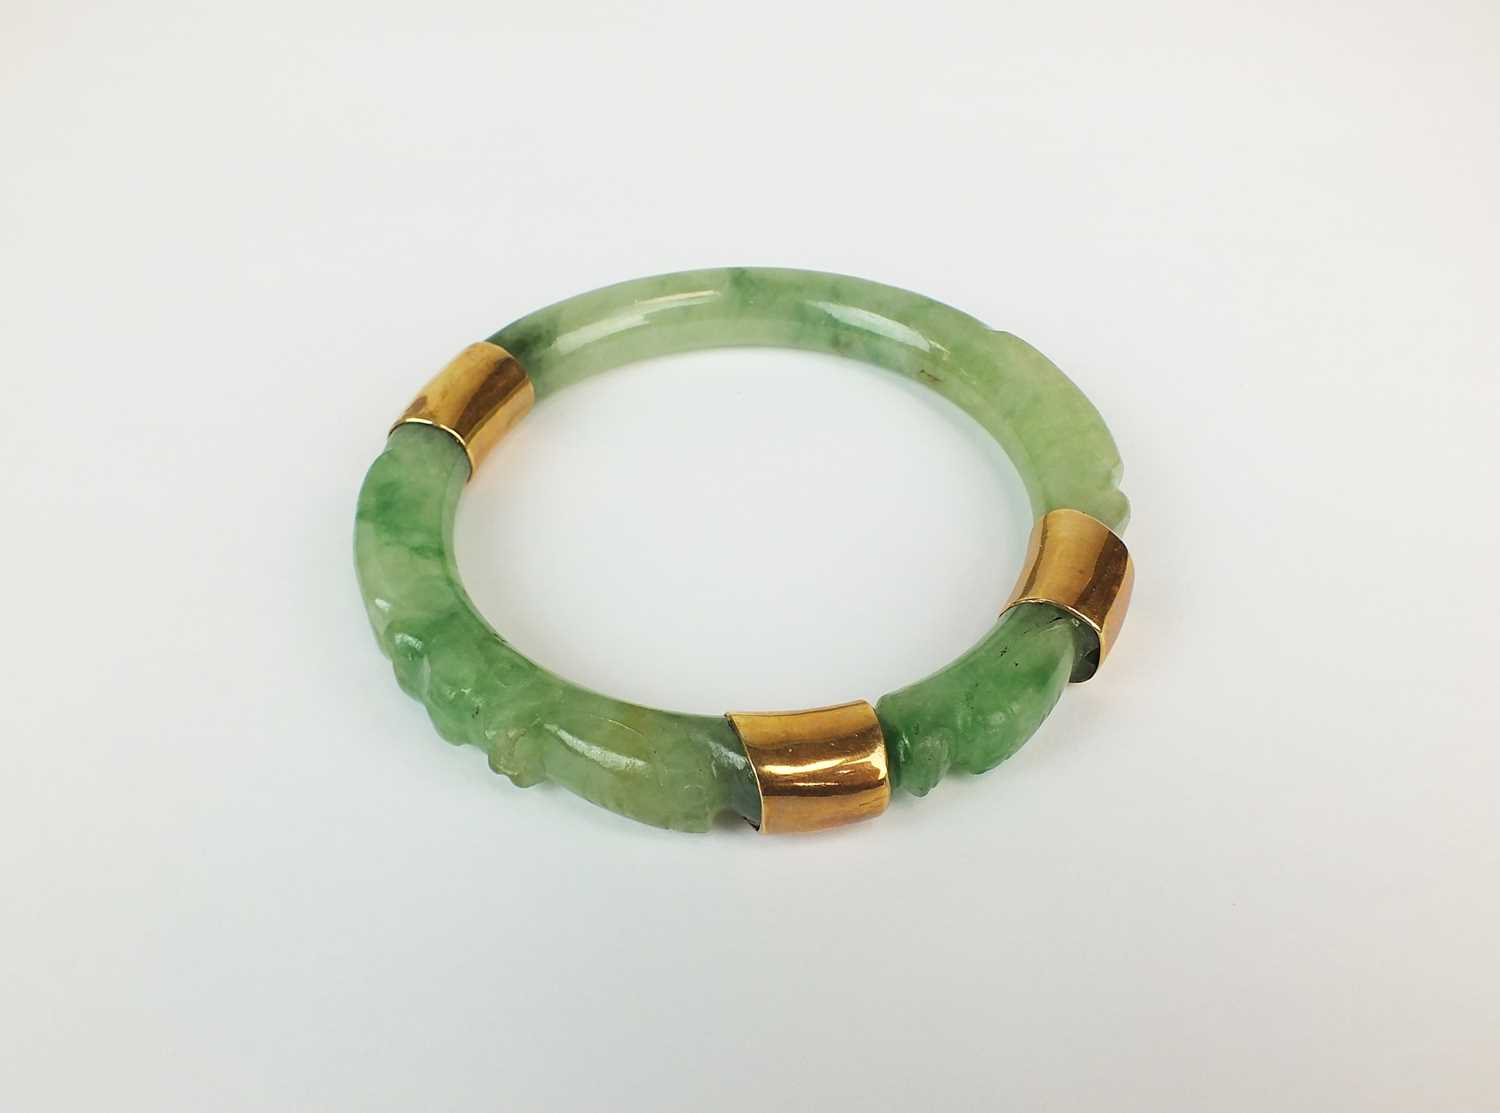 JADE Carved Dragon Flower 64mm Tested Green Jade Bangle Bracelet ideal  apple  eBay